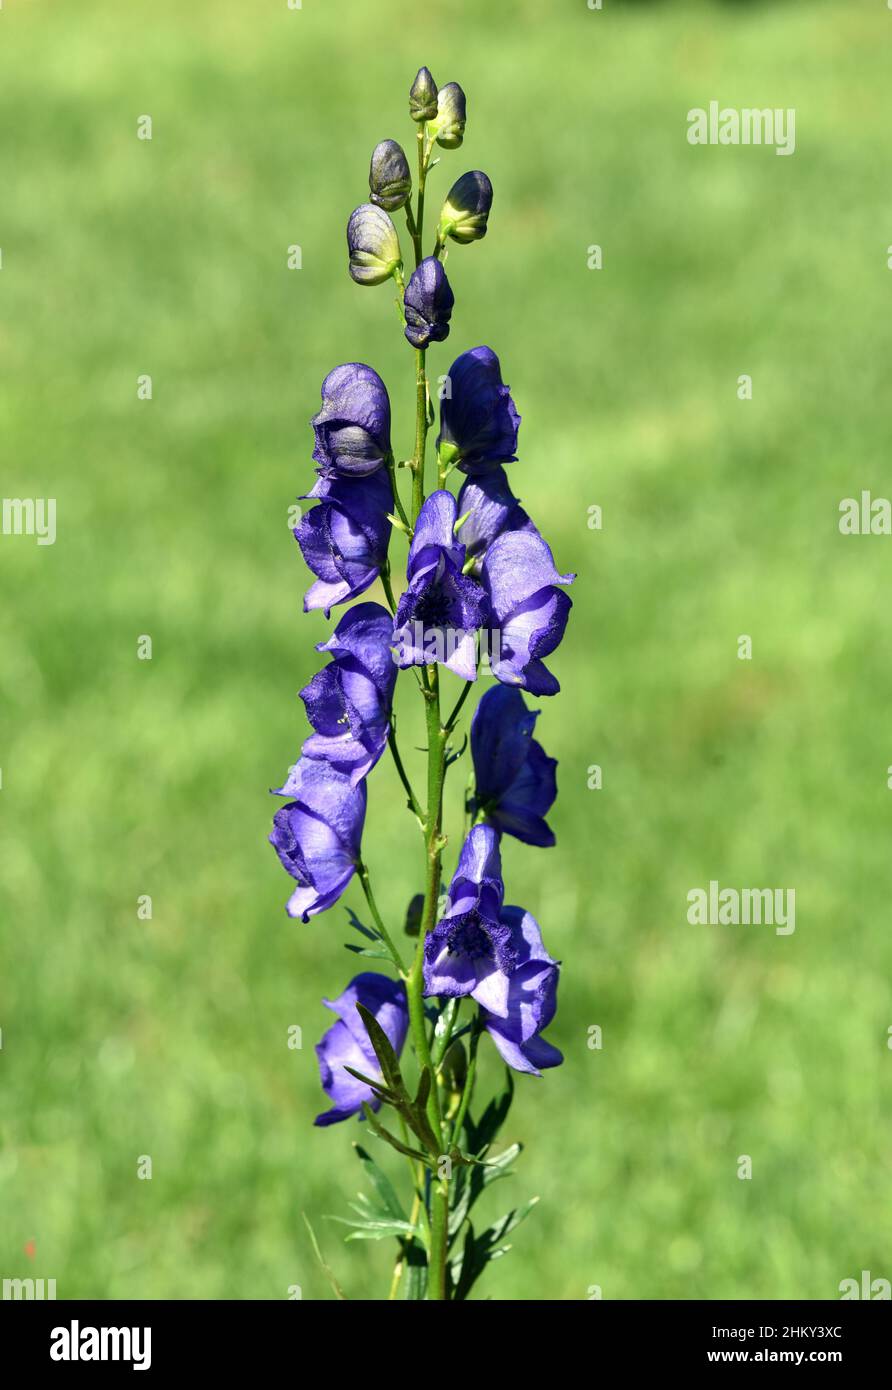 Eisenhut, Aconitium Napellus ist eine Gift- und Heilpflanze mit blauen Blueten. Monkshood, Aconitium napellus is a poisonous and medicinal plant with Stock Photo